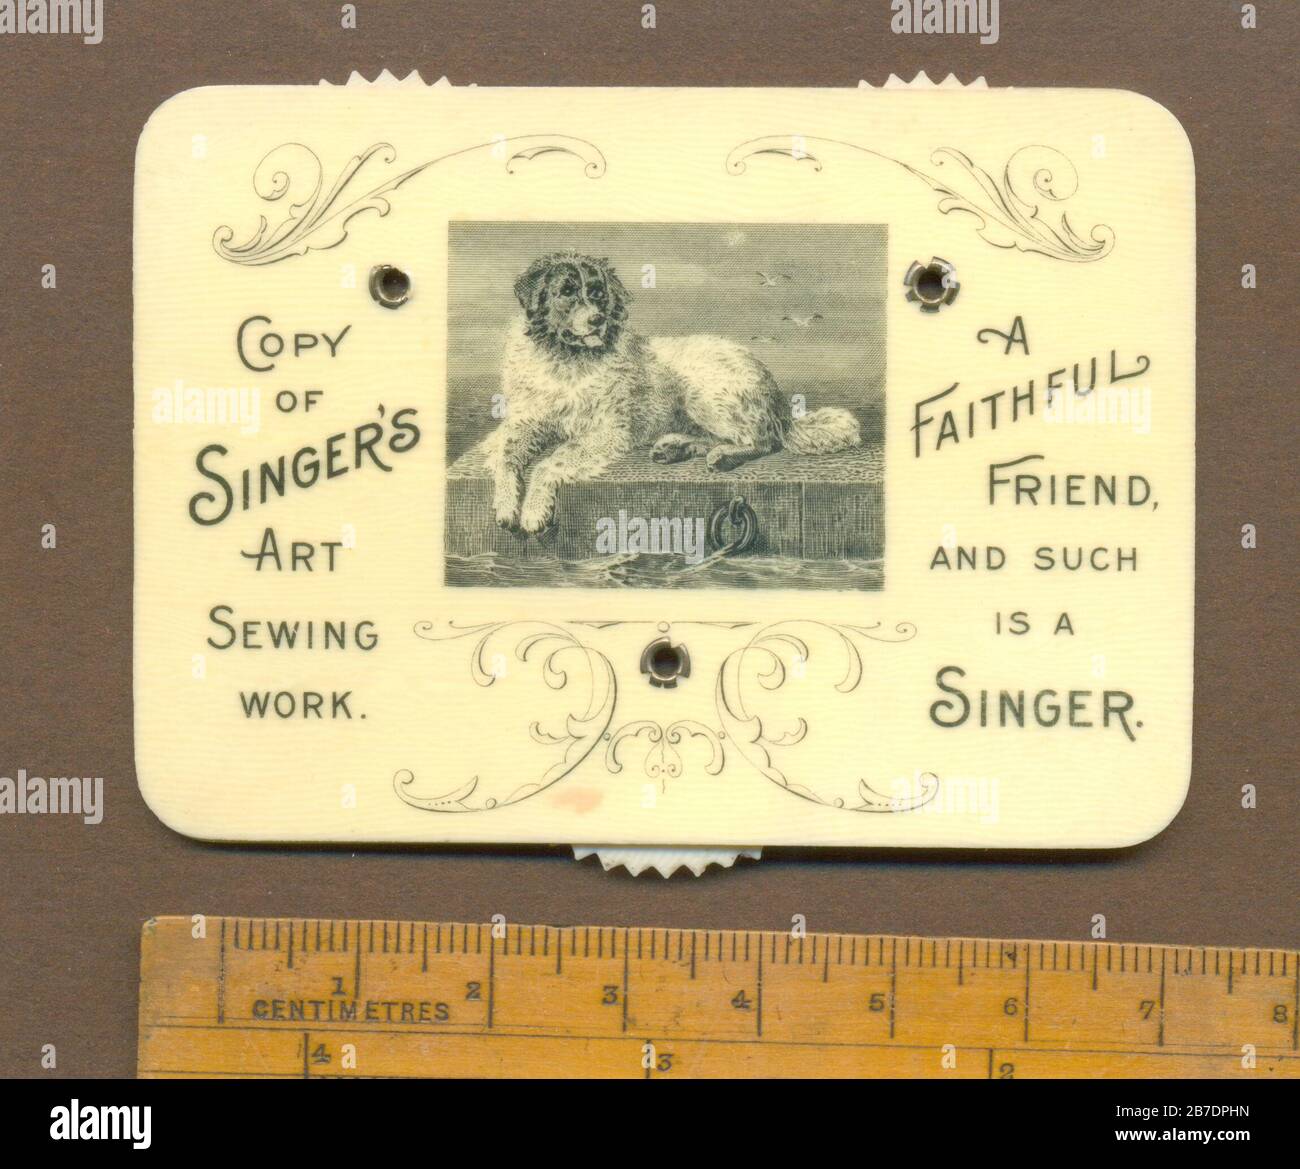 Whist celluloïde contre 1903 publicité Singer's Art Sewing Work Banque D'Images